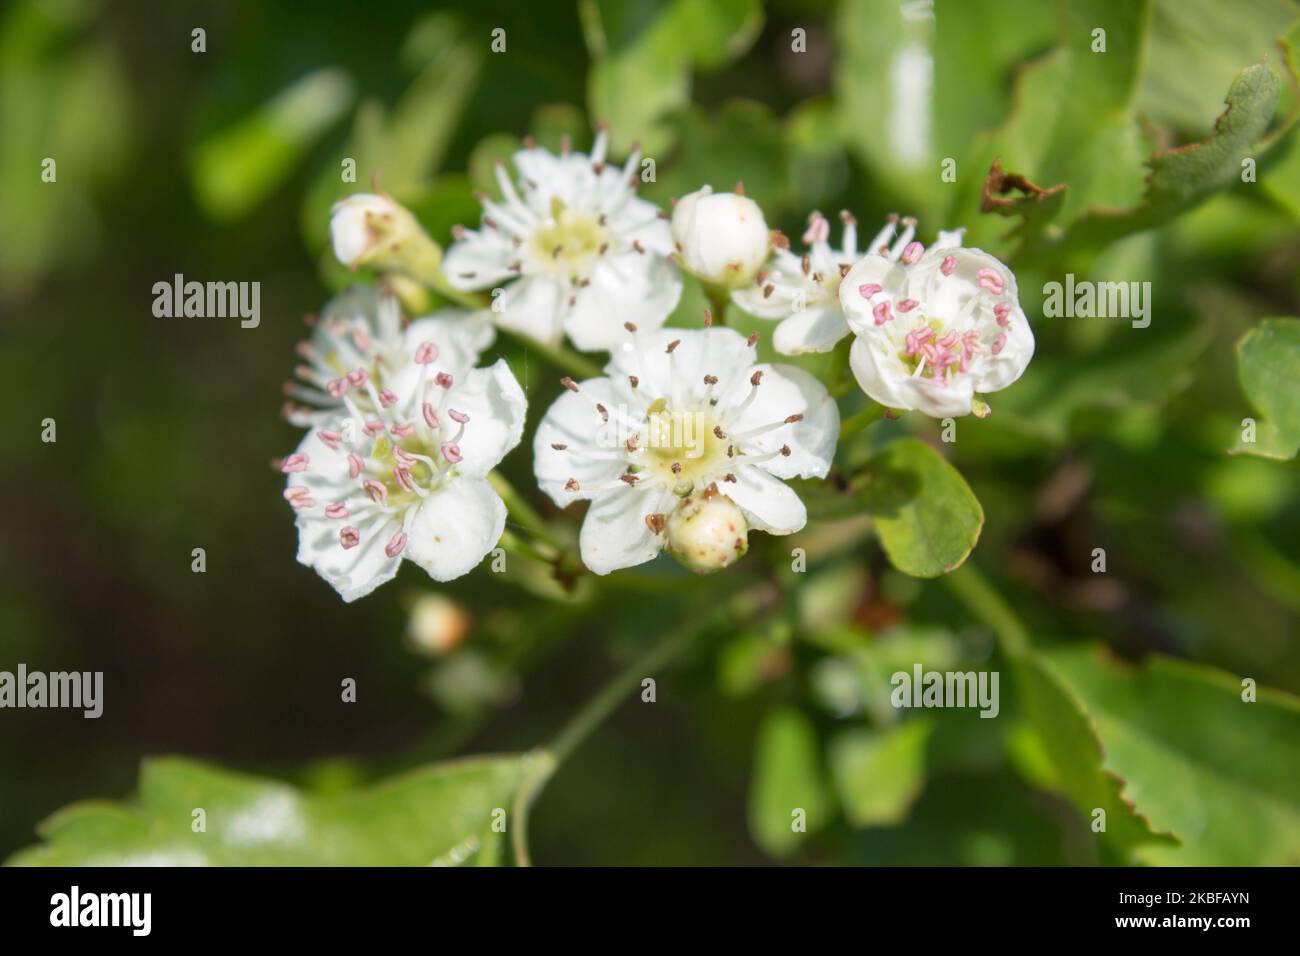 Blüten eines Weißdorns oder eines eingesäten Weißdornbusches (Crataegus monogyna). Die Pflanze wird im traditionellen Kräuterwesen verwendet. Stockfoto